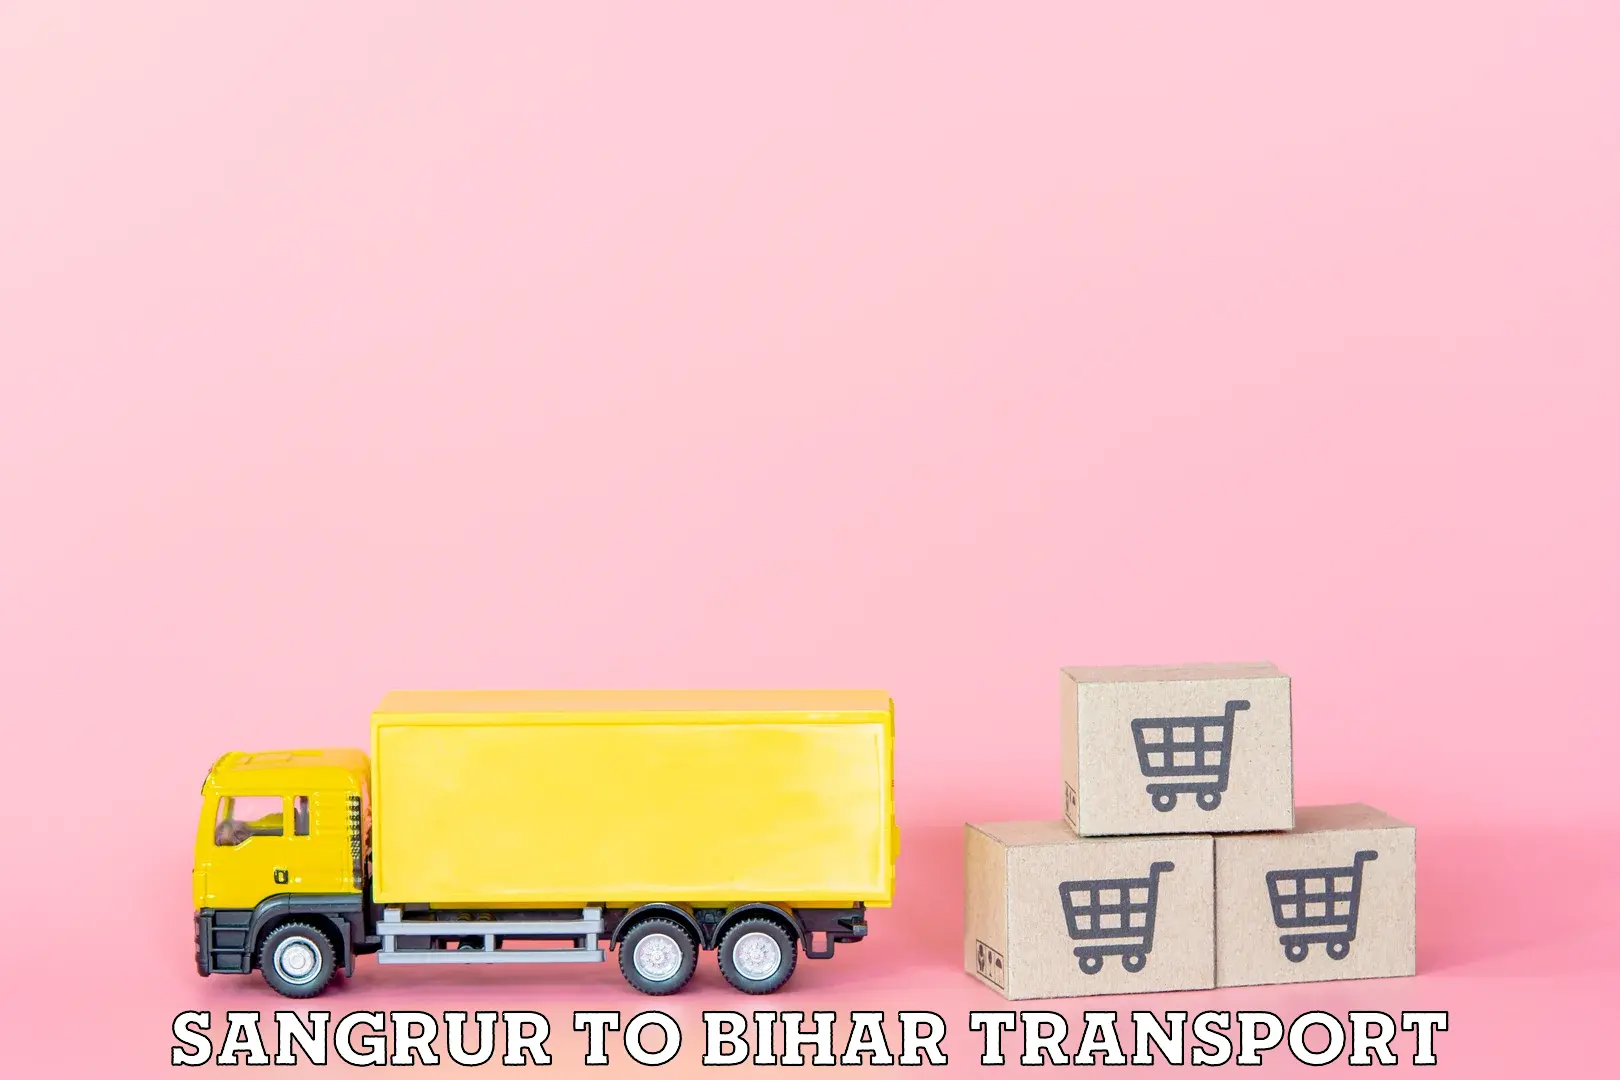 Transport in sharing Sangrur to Banka